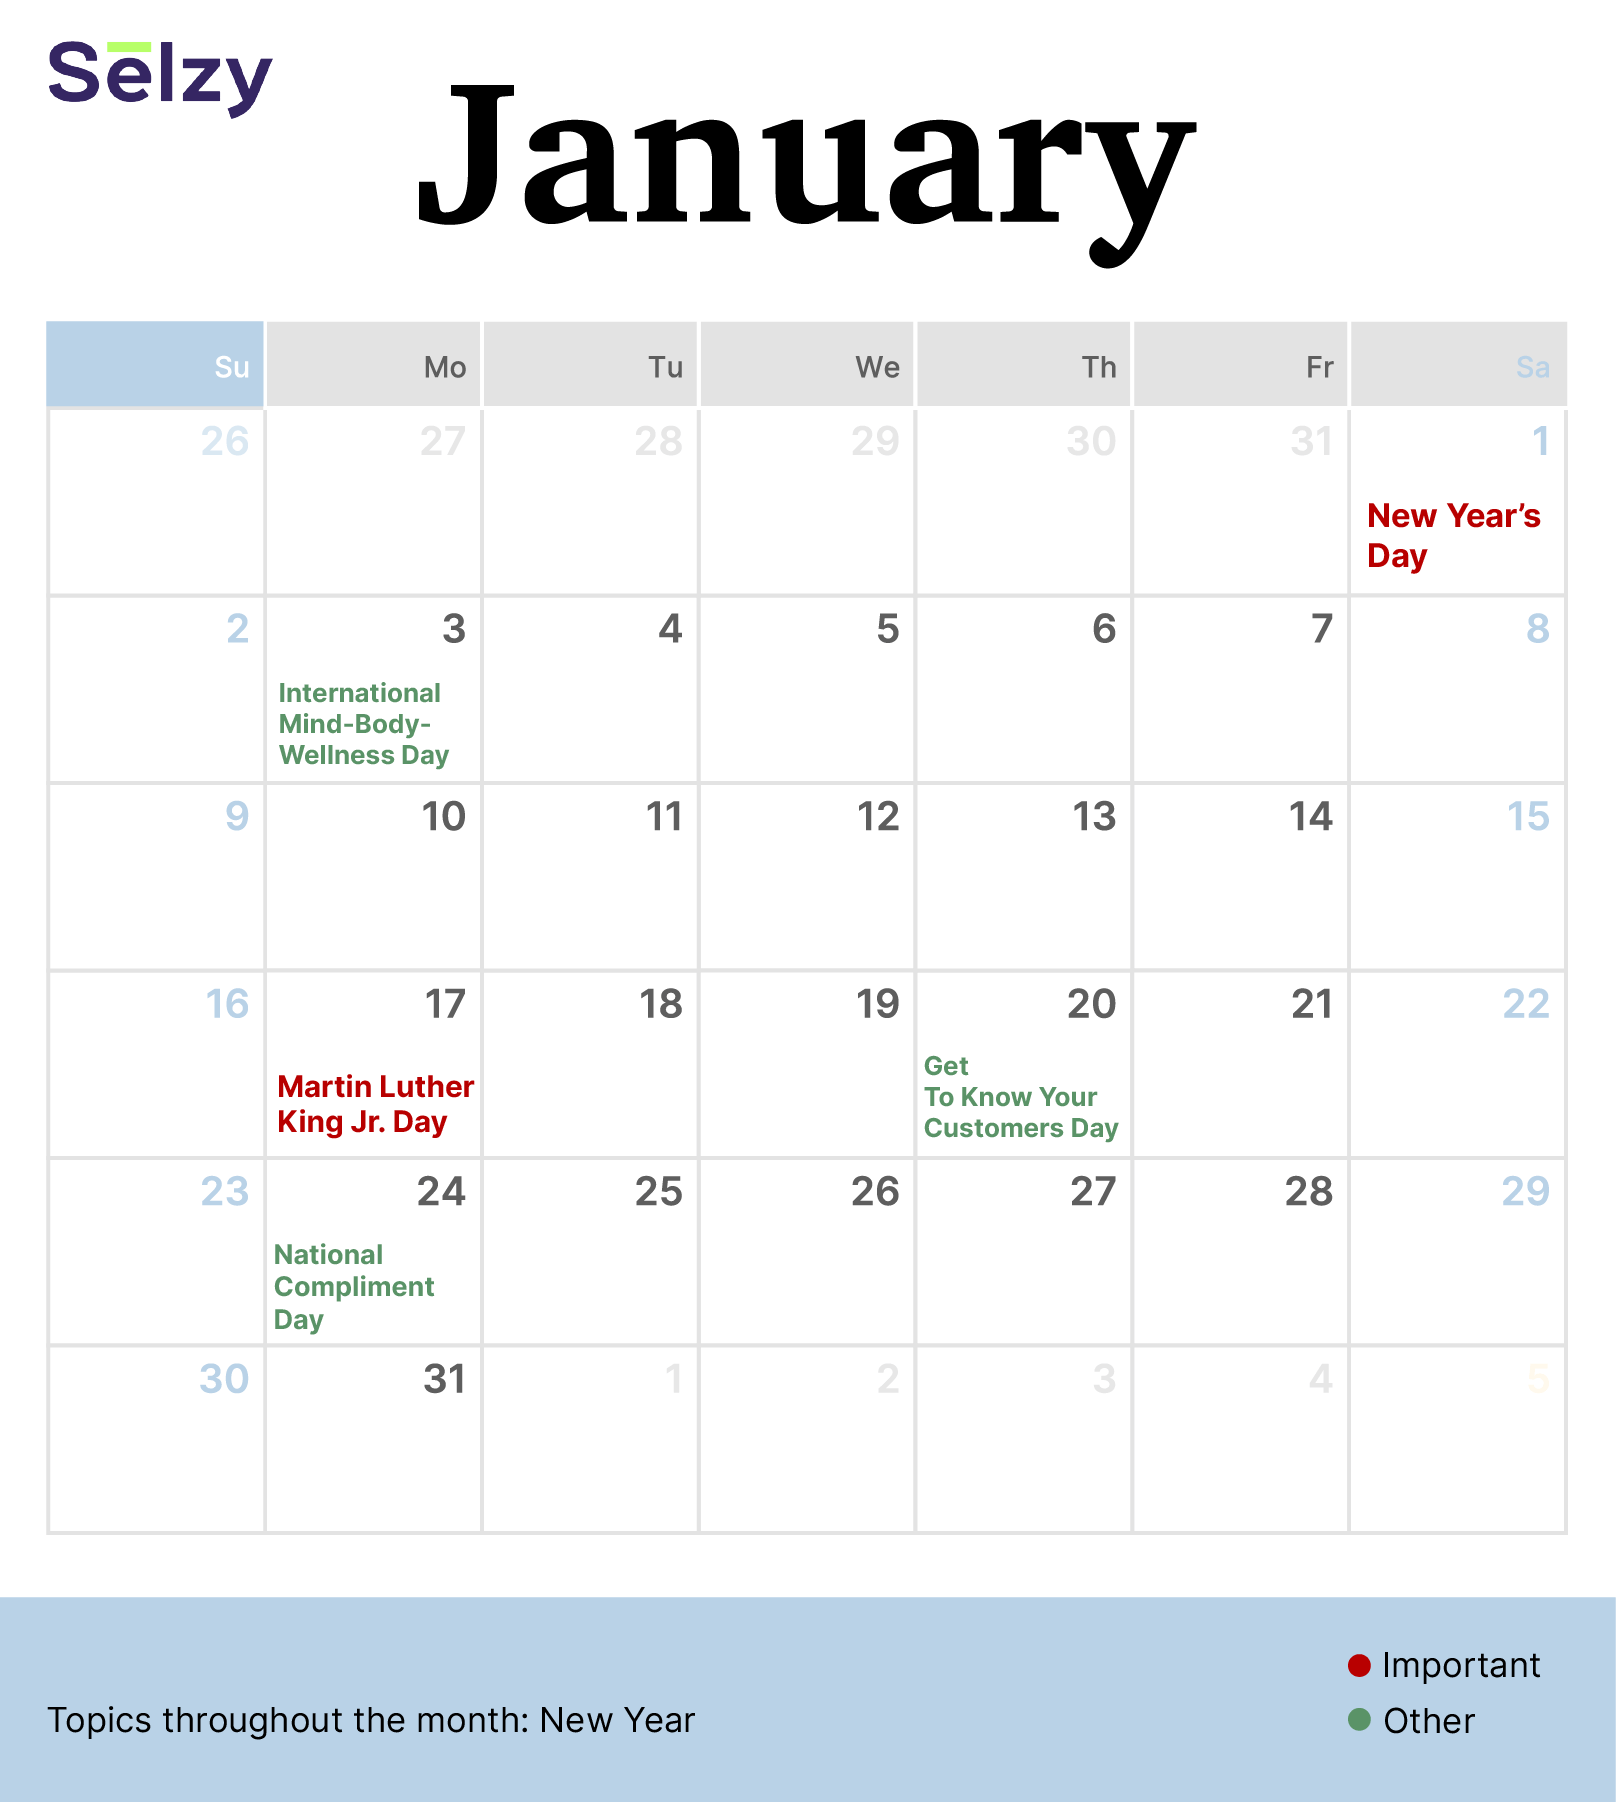 Holiday Marketing Calendar – January